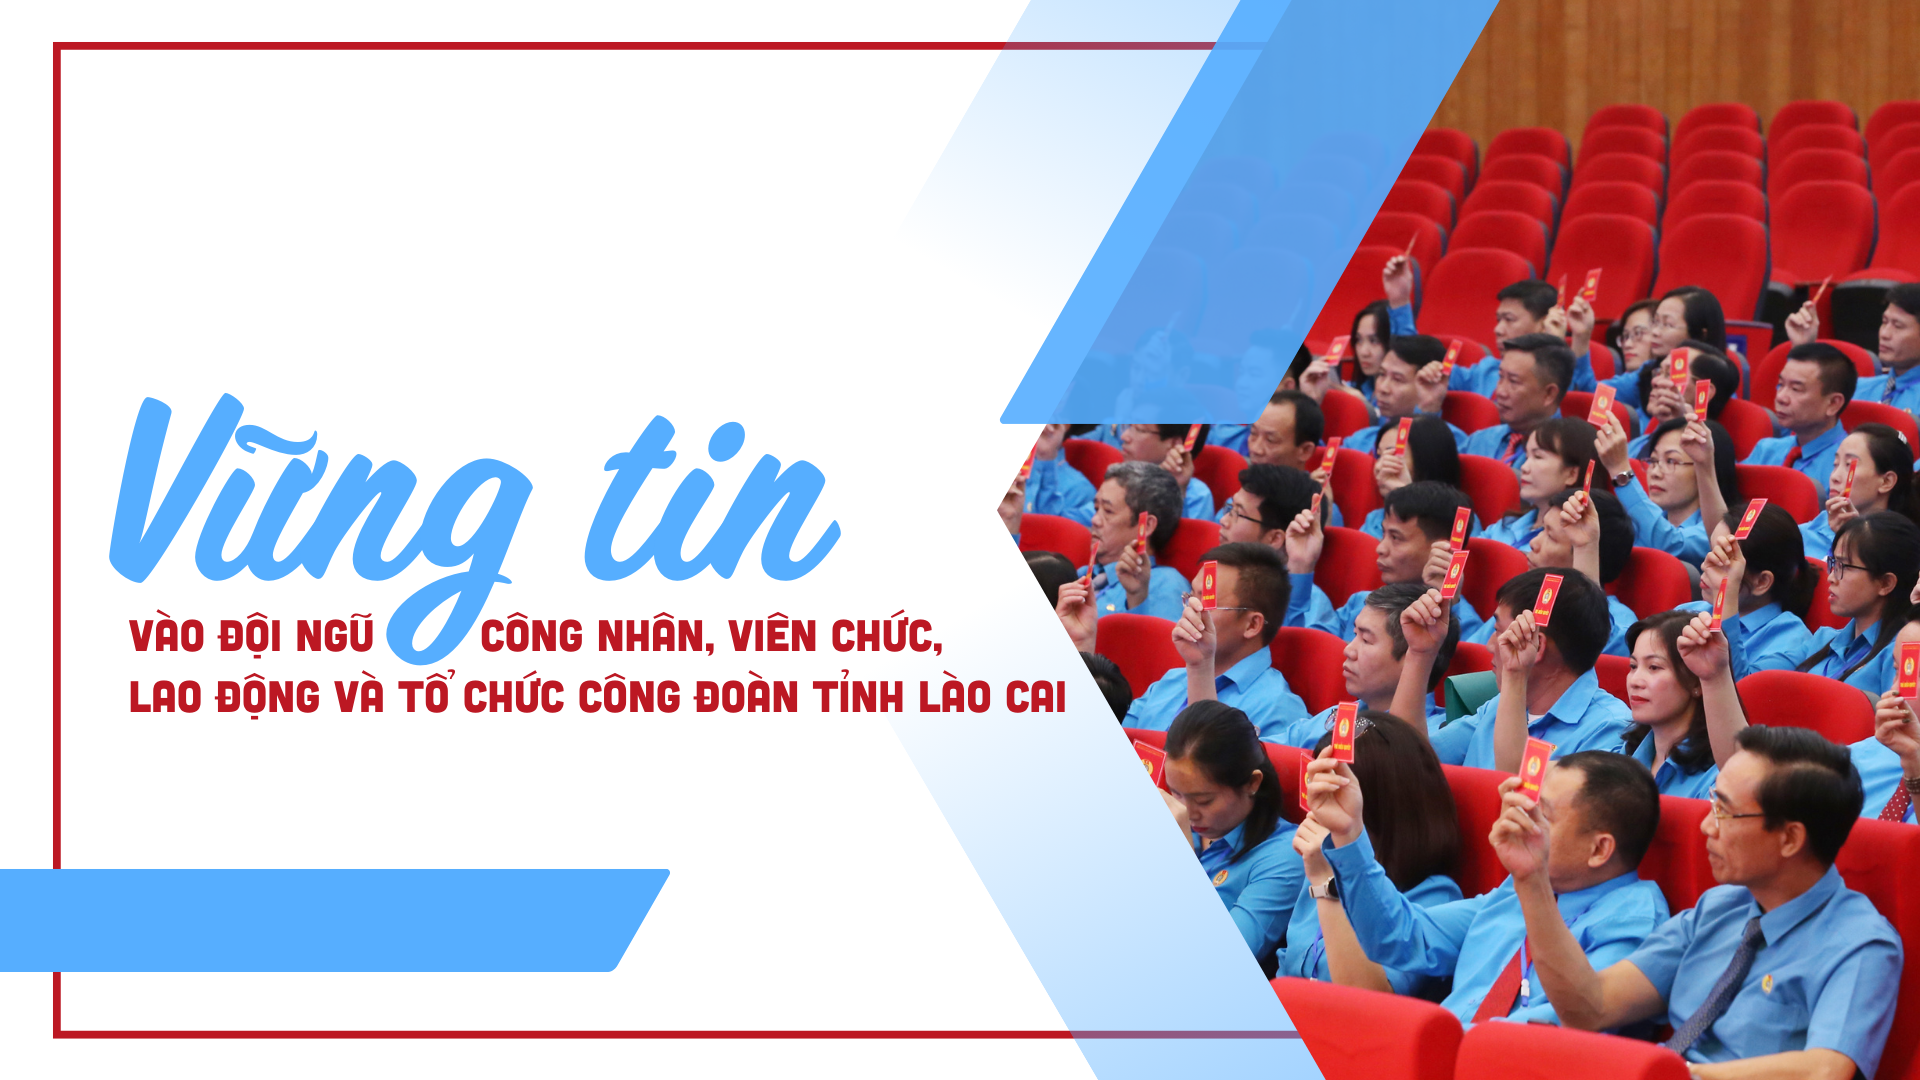 Vững tin vào đội ngũ công nhân, viên chức, lao động và tổ chức công đoàn tỉnh Lào Cai